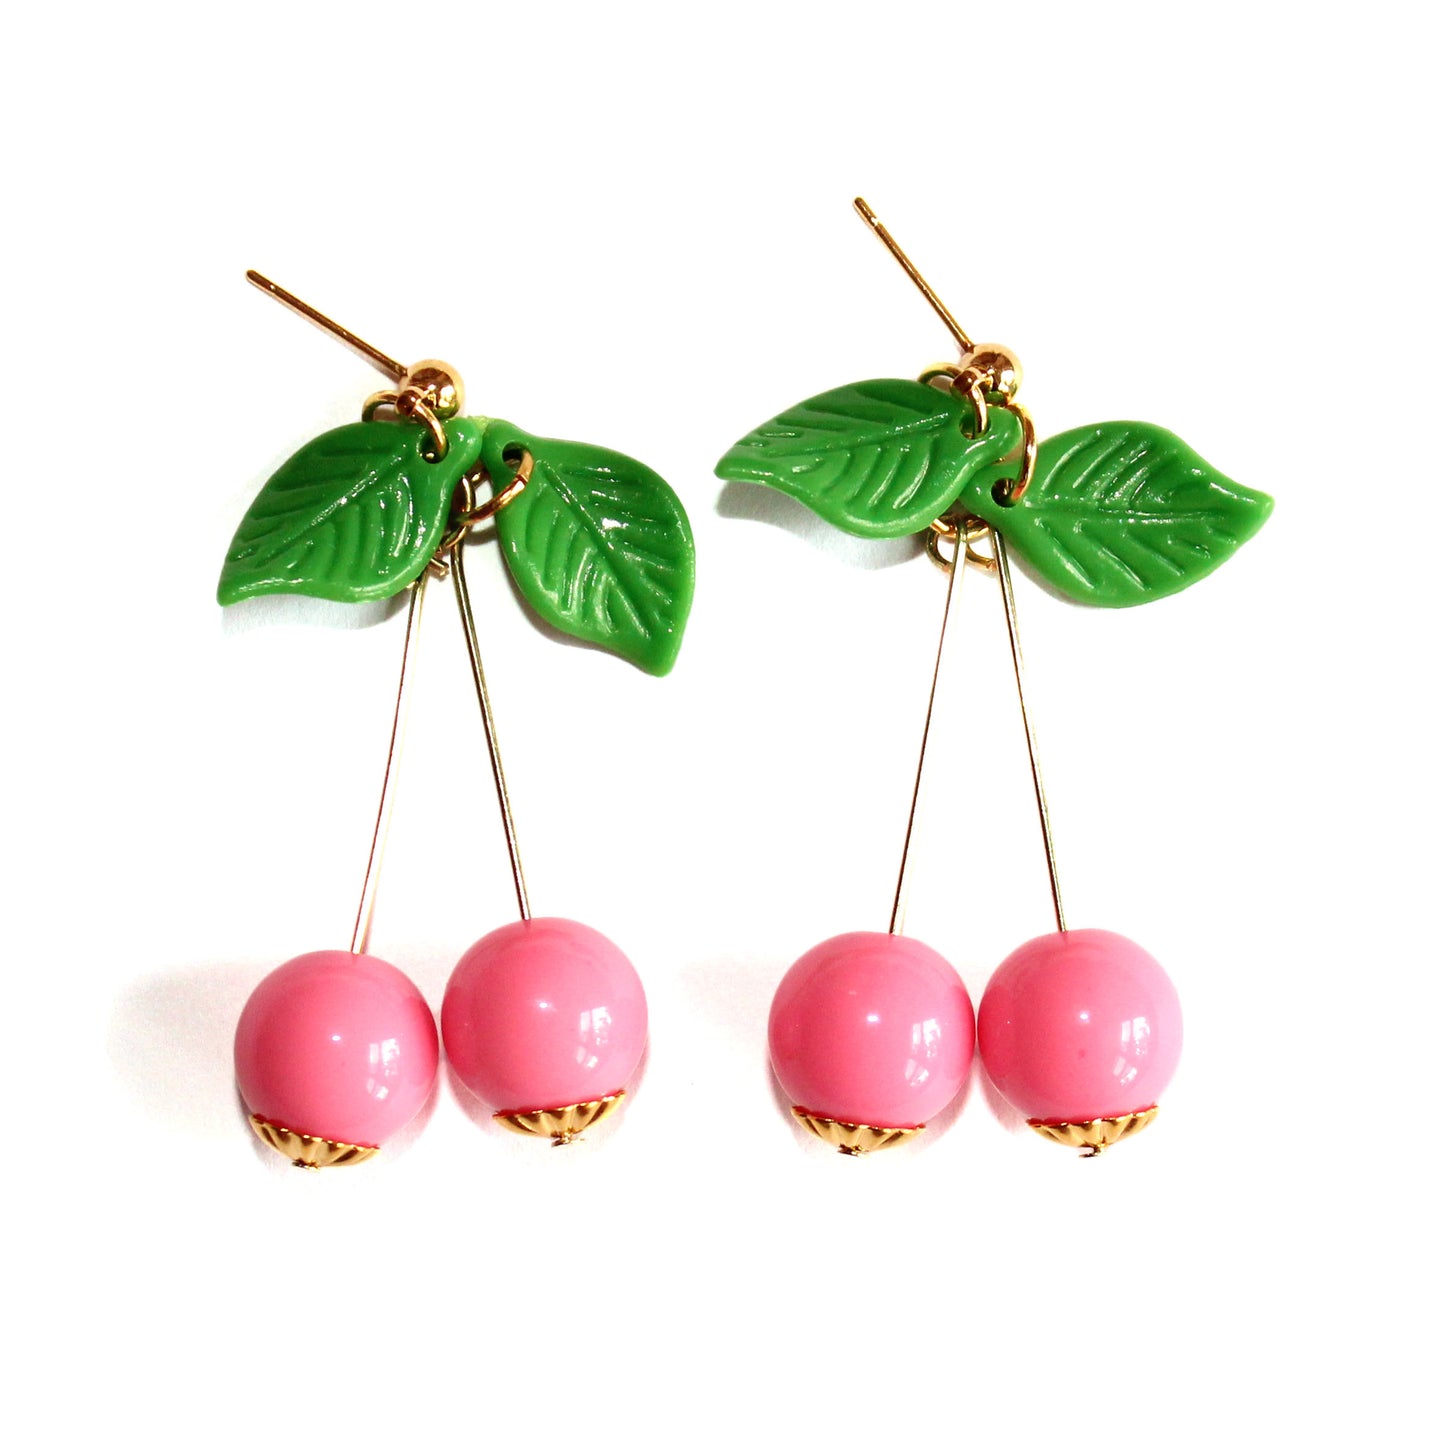 Dainty Cherry Earrings